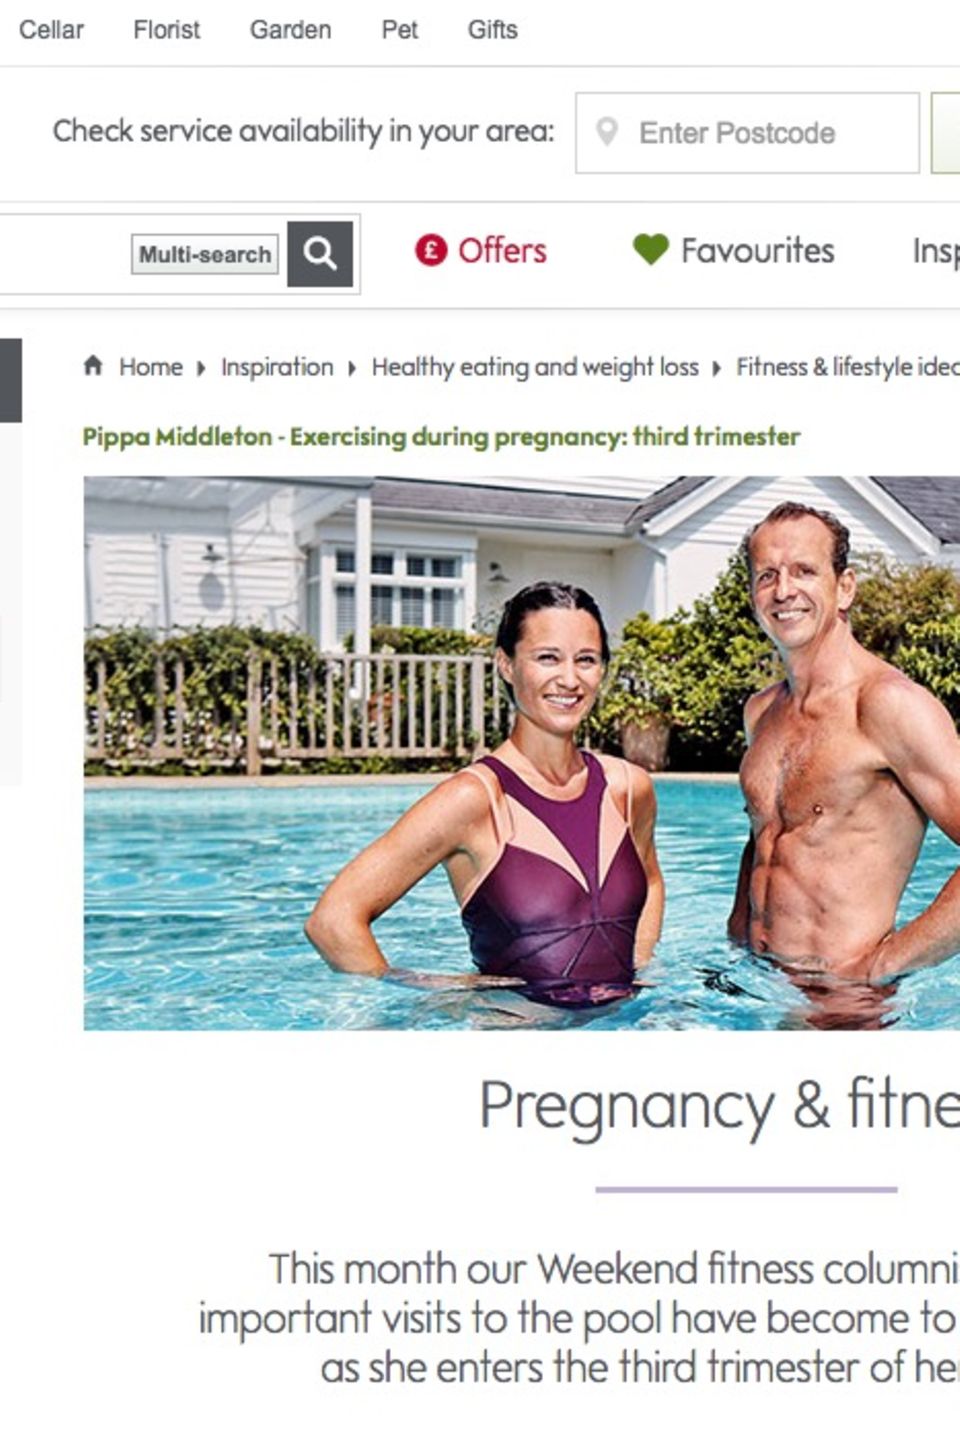 Auf waitrose.com schreibt Pippa Middleton über "Pregnancy & Fitness". Im dritten Artikel berichtet sie, dass sie aktuell schwimmt, um sich fit zu halten.